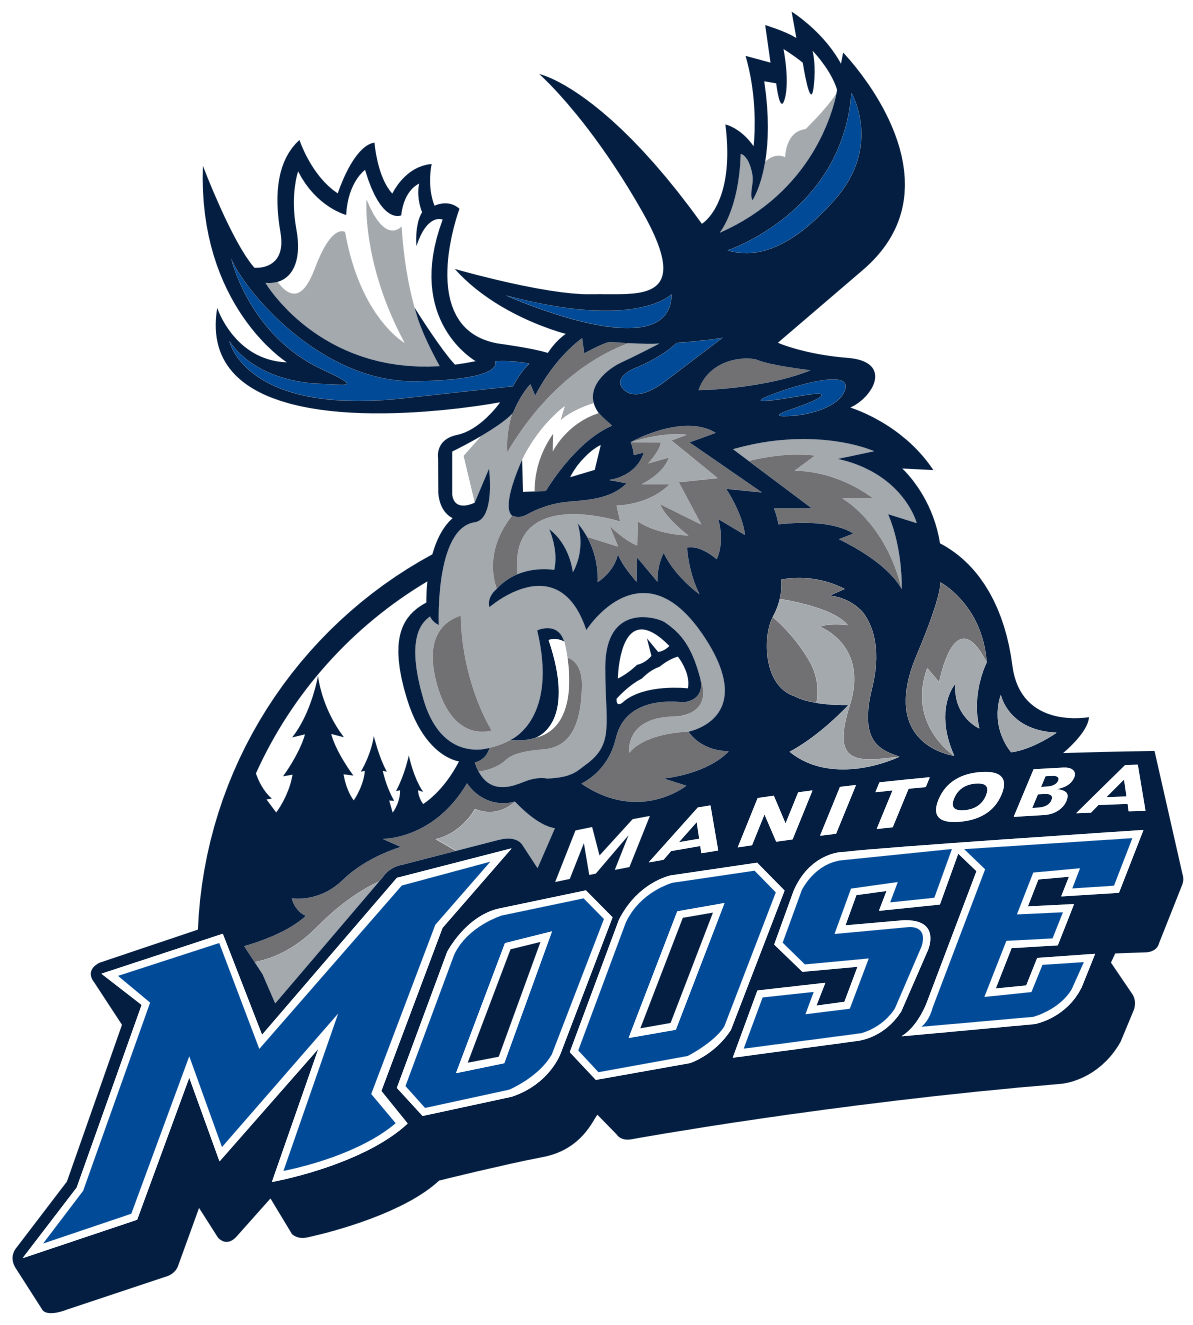 Manitoba Moose - Wikipedia - Manitoba Moose Logo (1200x1330)